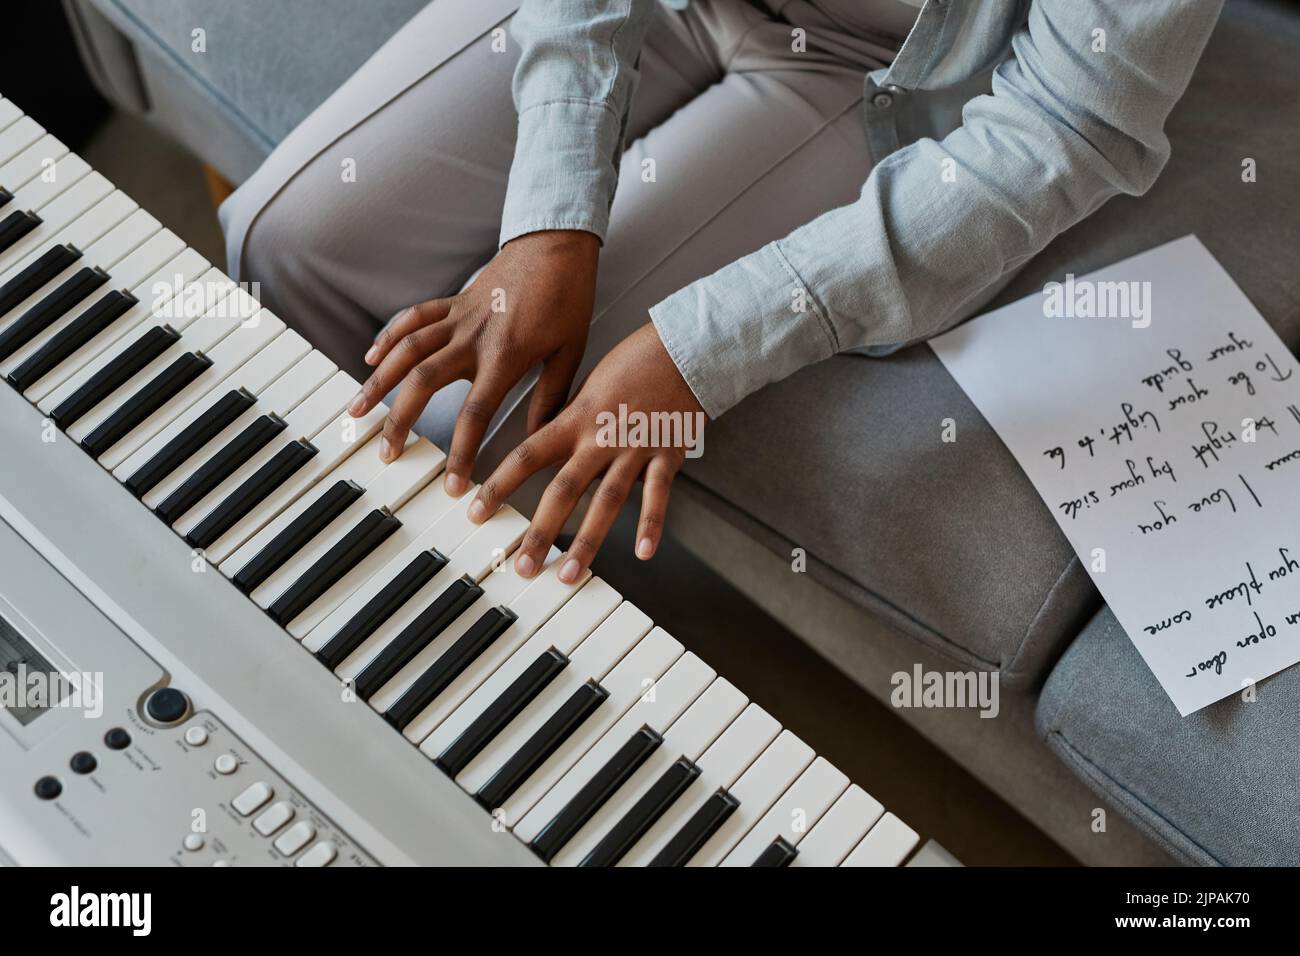 Vista superior Primer plano de la joven mujer pulsando las teclas de piano mientras compone música en casa con letras de canciones, espacio de copia Foto de stock